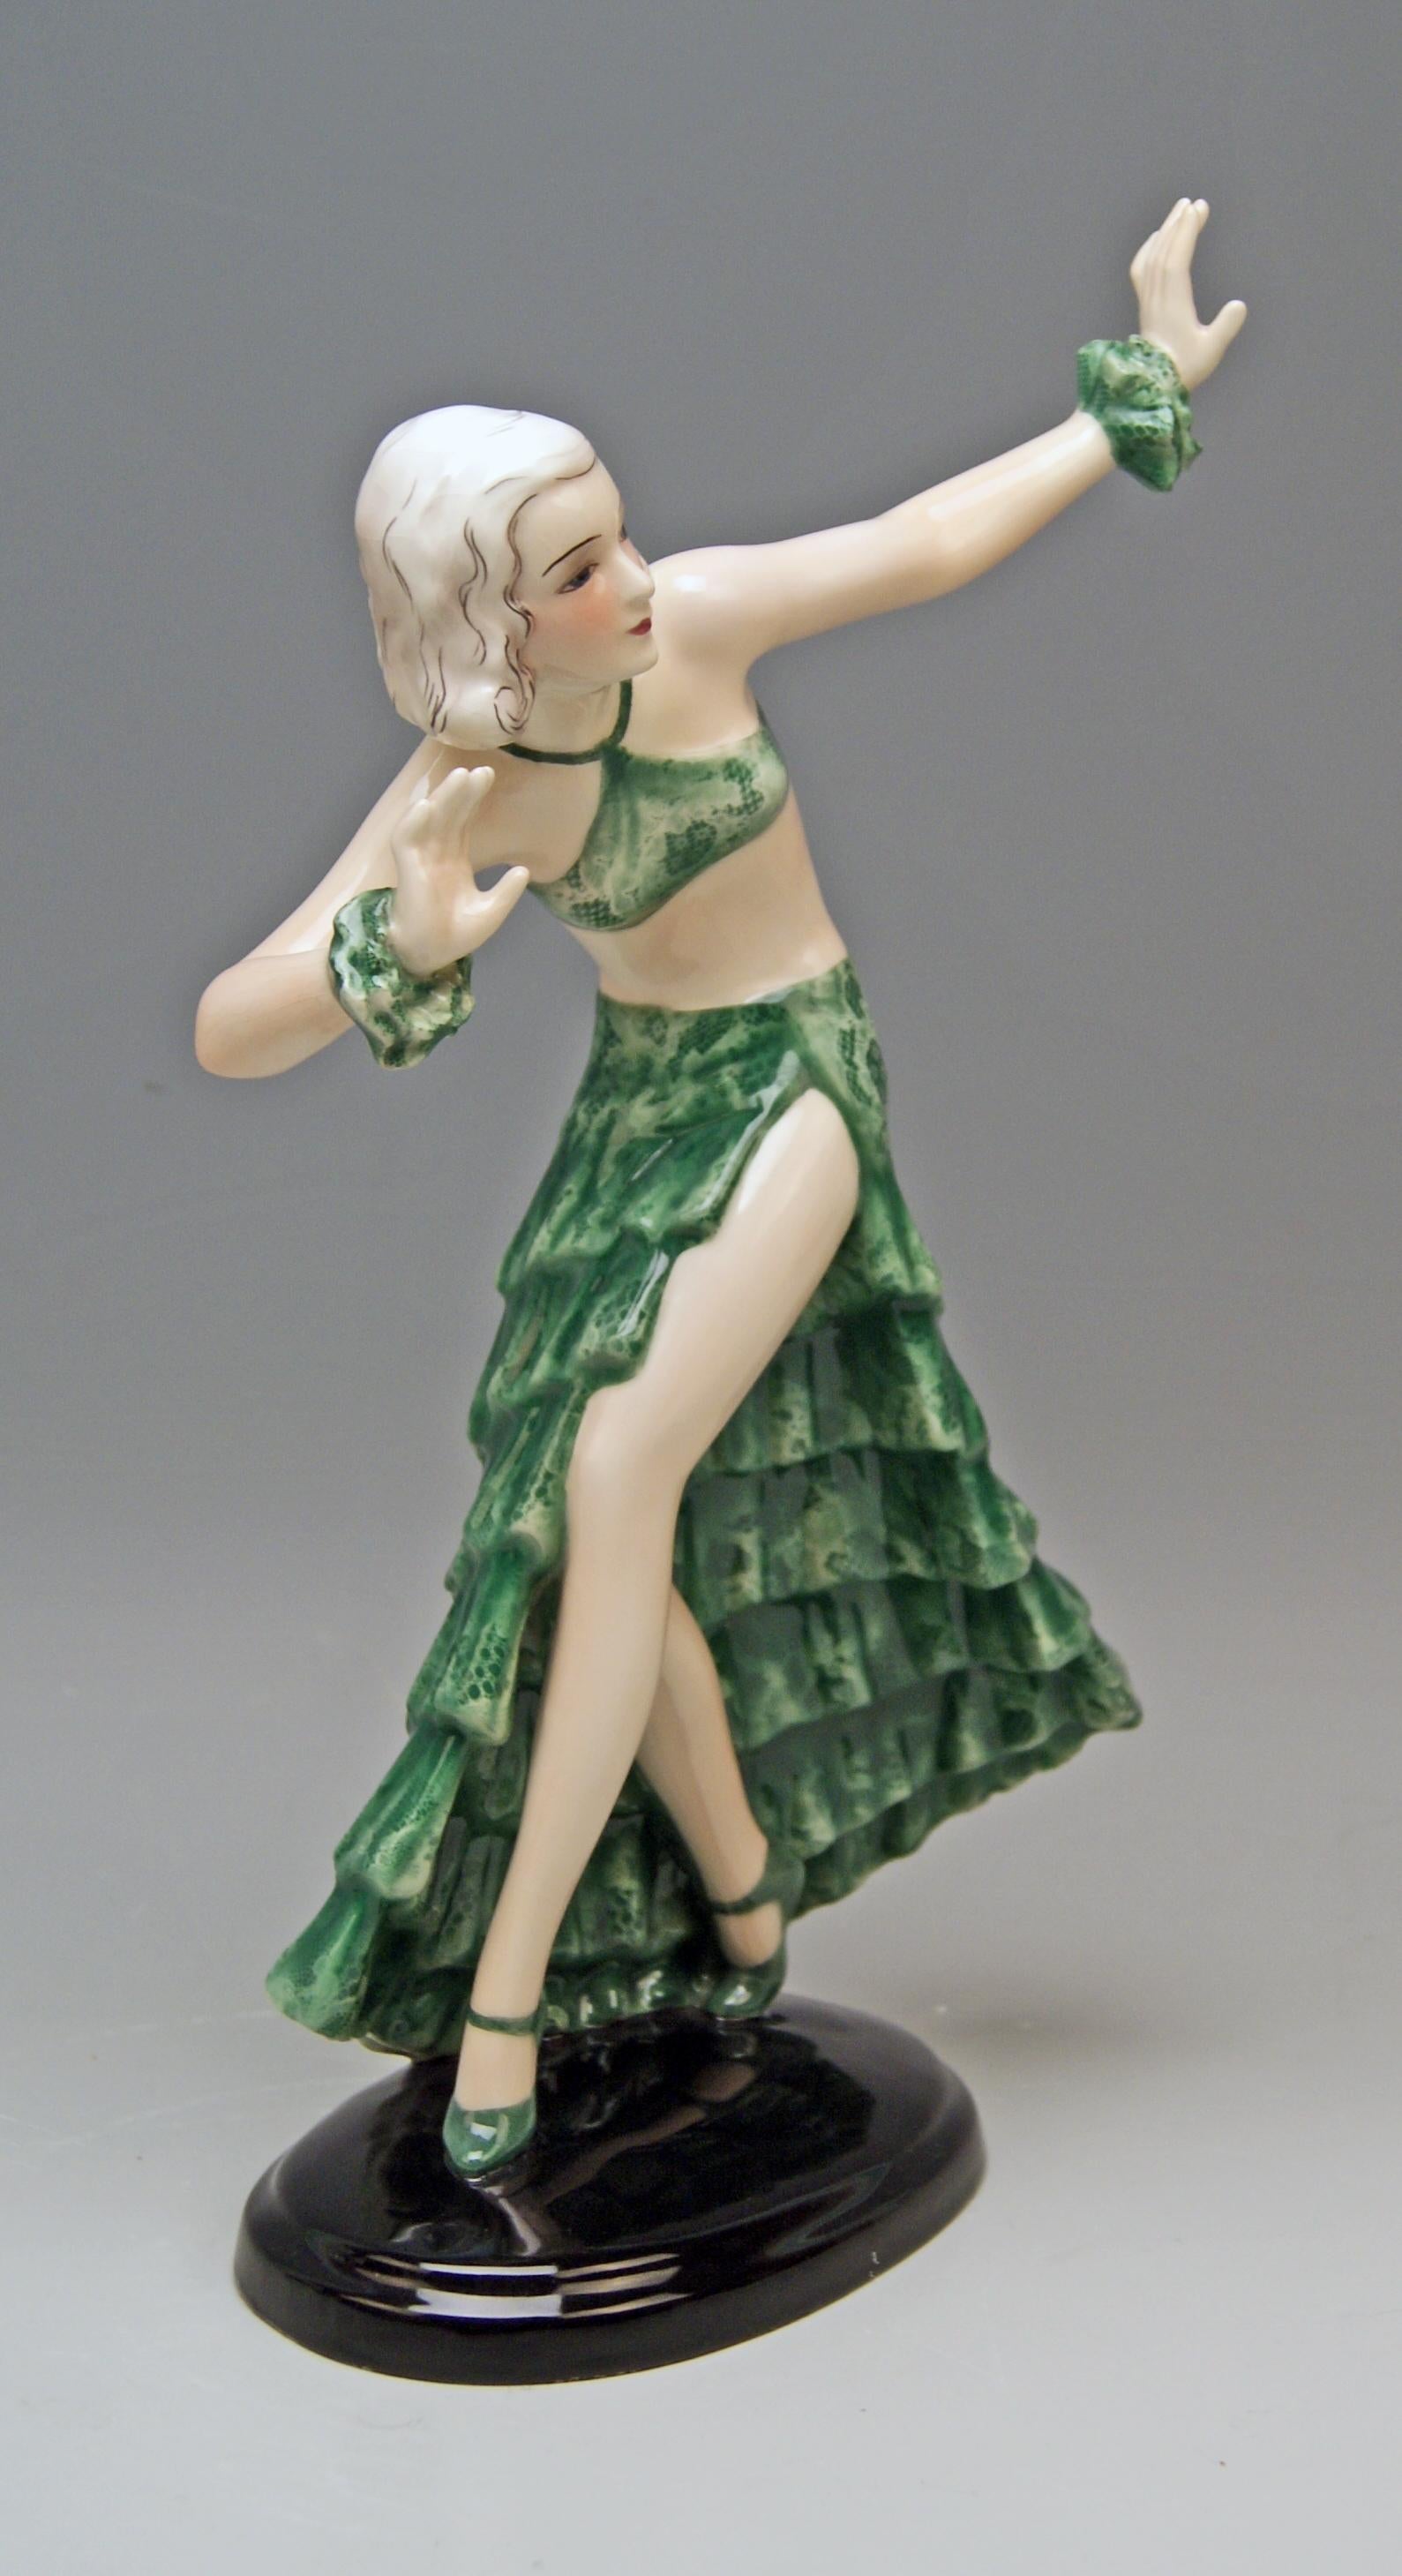 Goldscheider Vienna dancing lady clad in green long skirt and top

Designed by Josef Lorenzl (1892-1950), circa 1934-1935
made 1936 
model number 7058 / 90 / 19

Hallmarked:
Goldscheider Wien ( = VIENNA) stamp mark
Made in Austria /